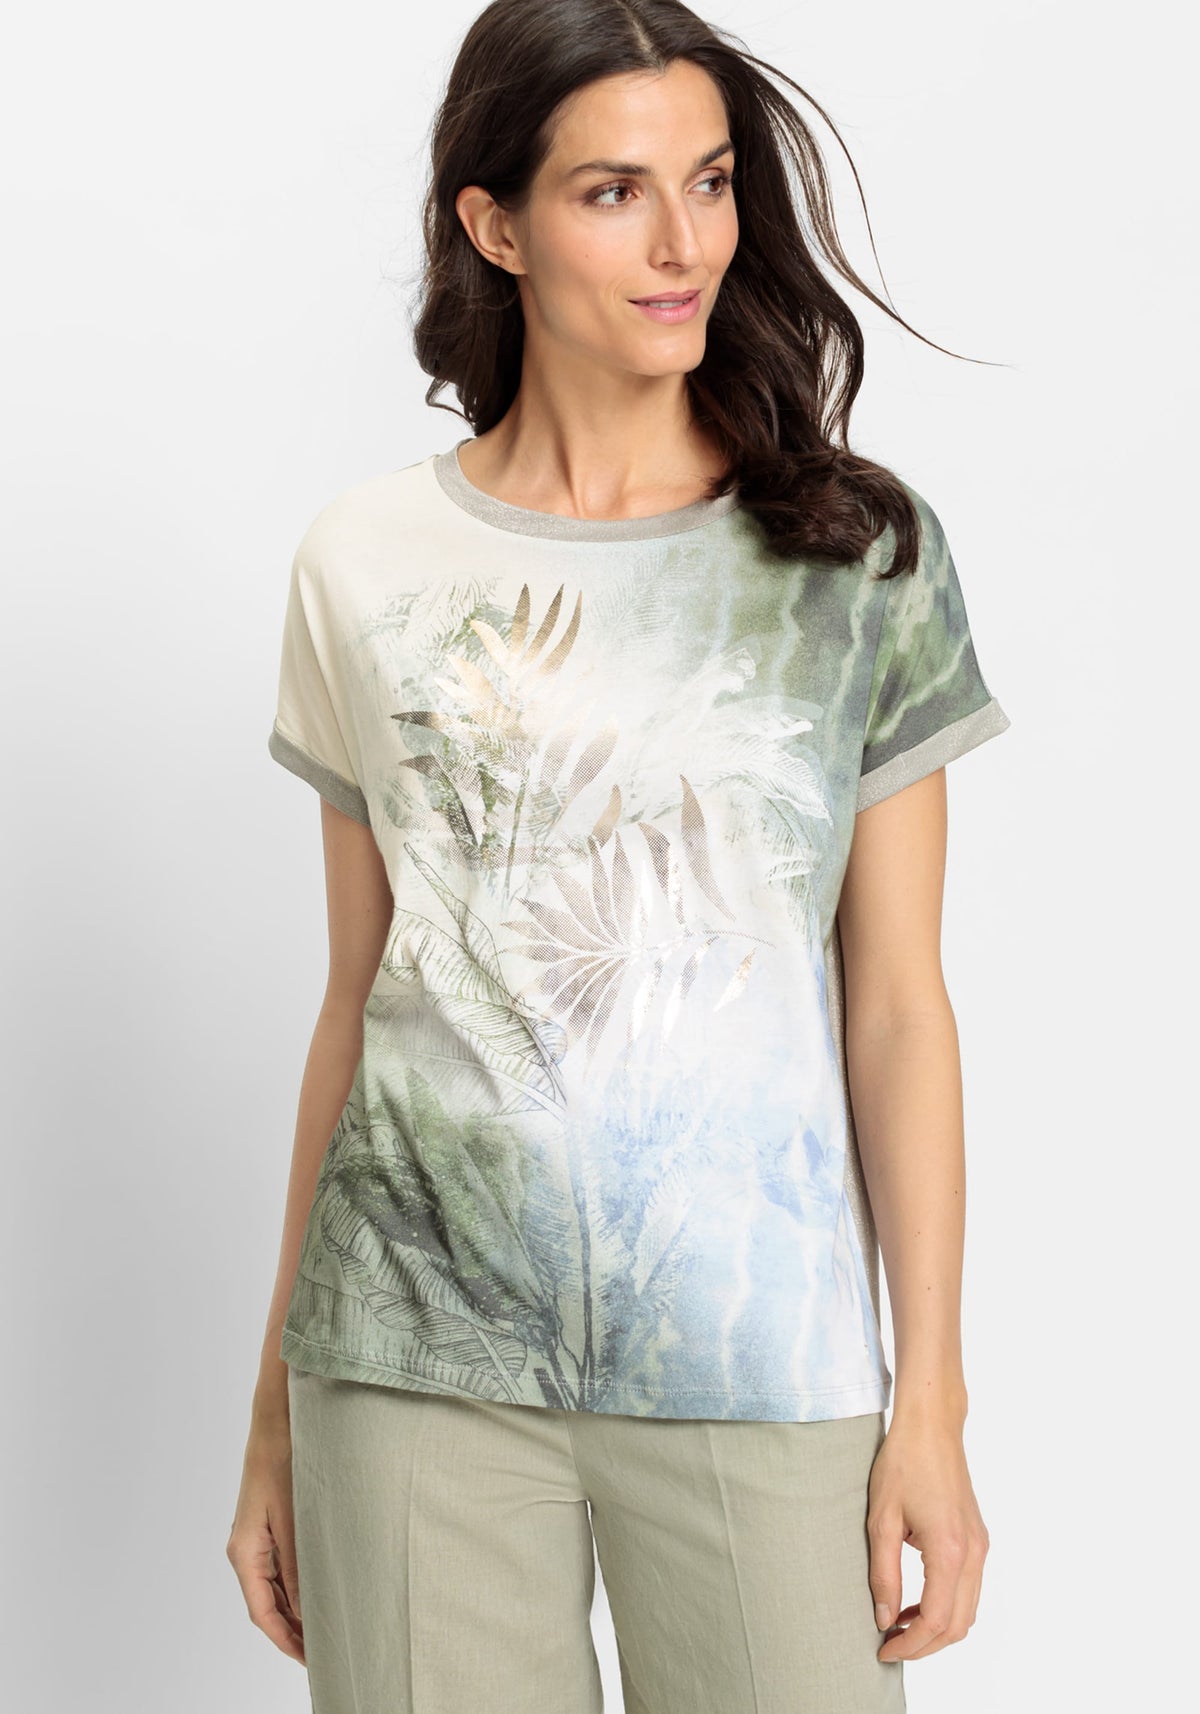 Tropic Glam Short Sleeve T-Shirt